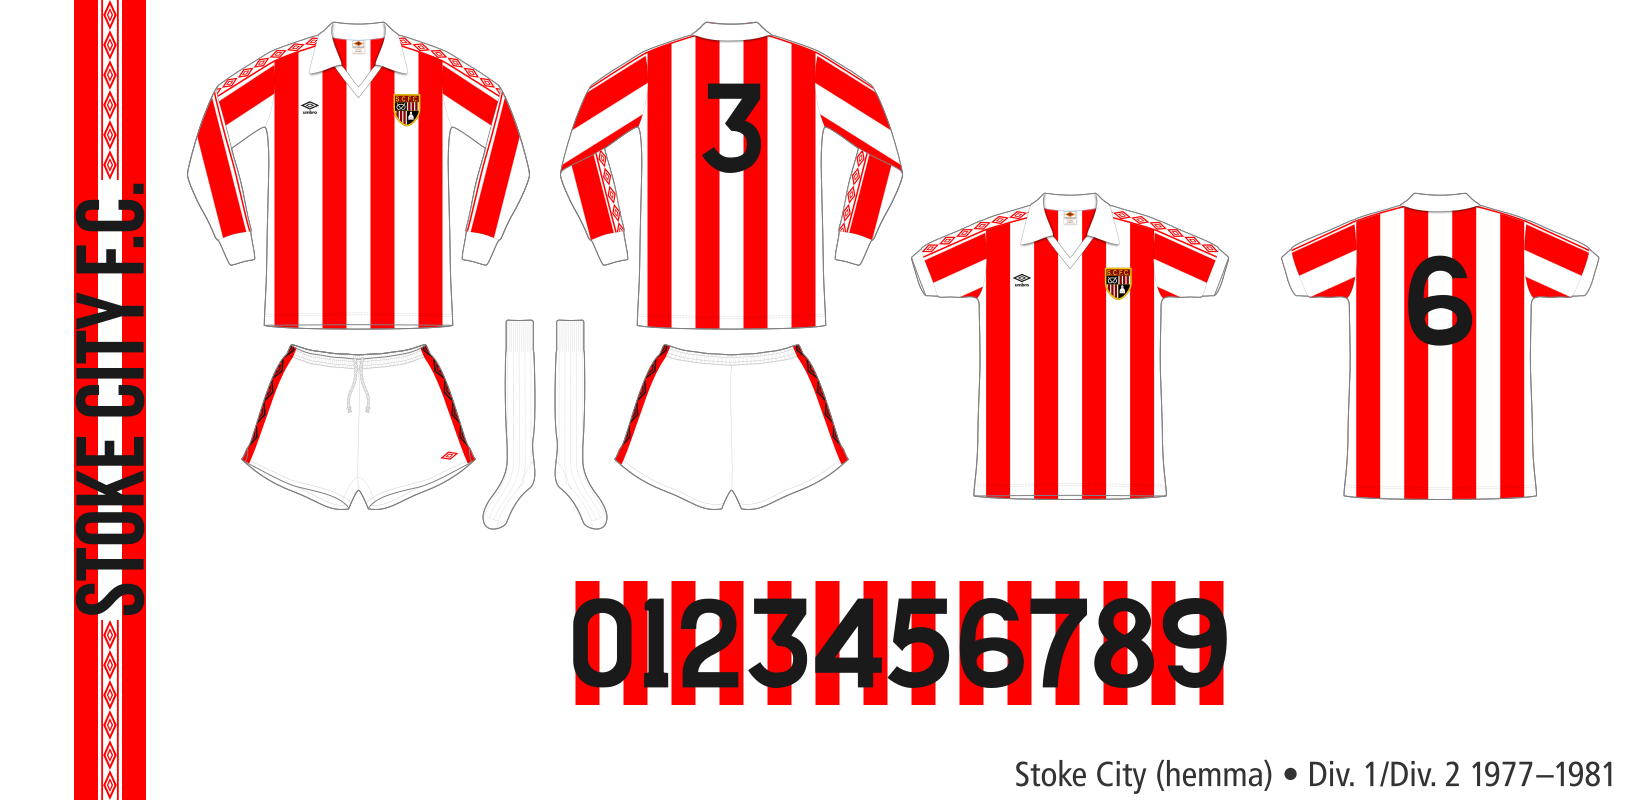 Stoke City 1977–1981 (hemma)